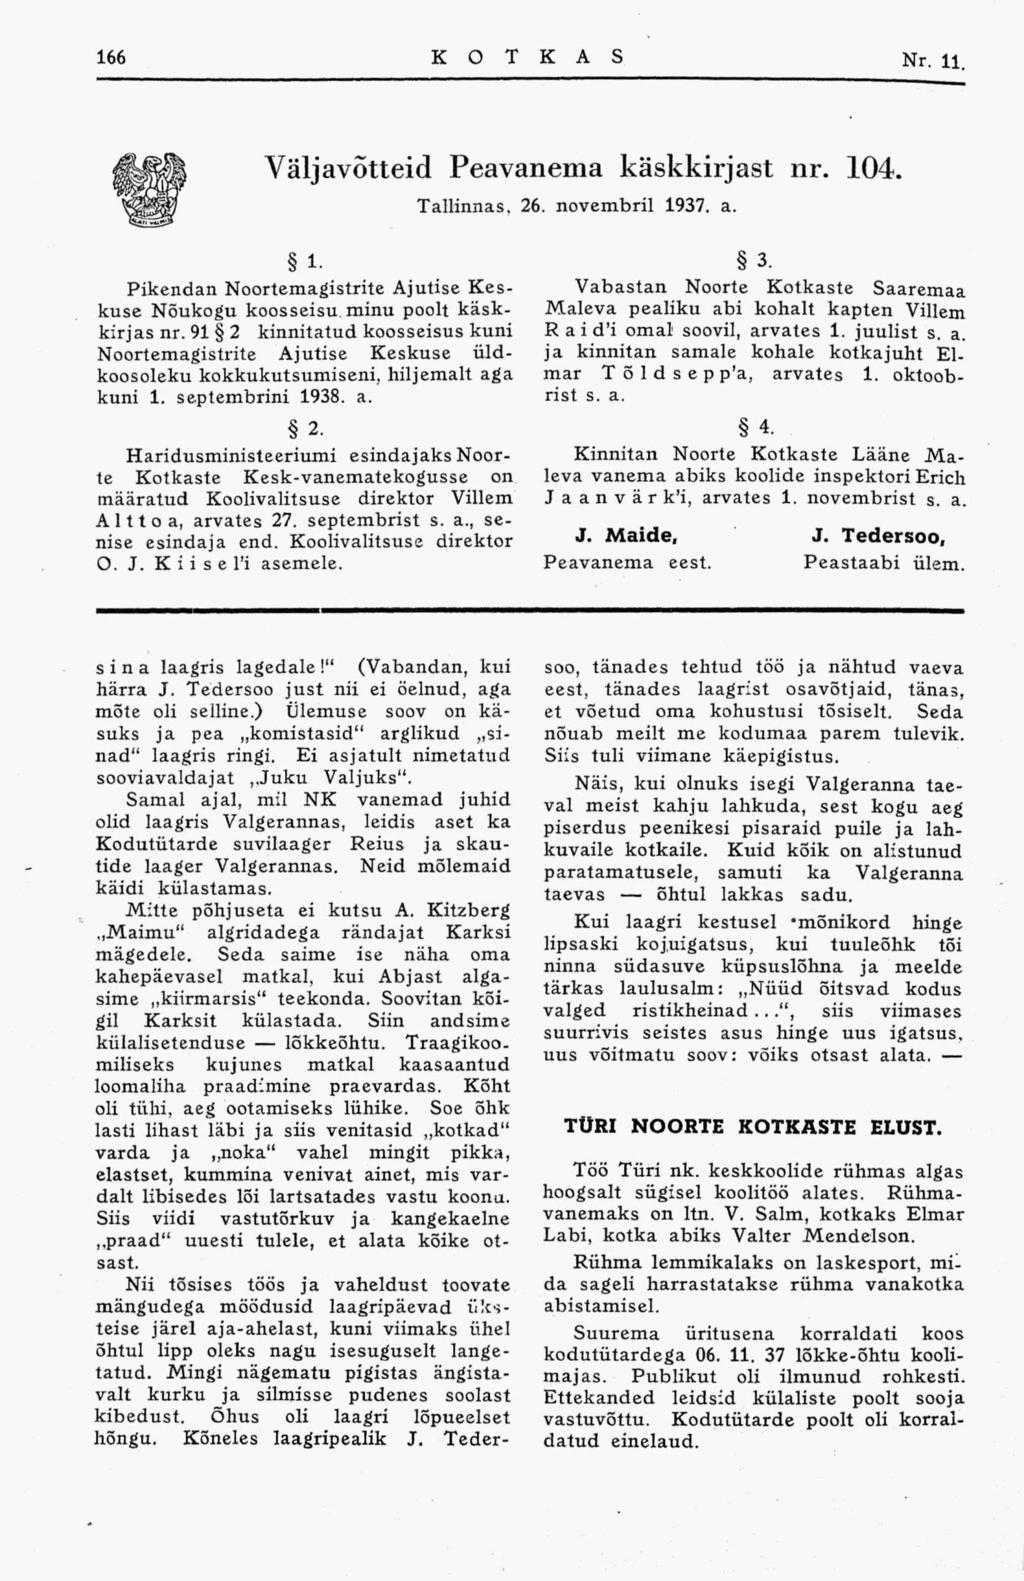 Väljavõtteid Peavanema käskkirjast nr. 104. Tallinnas, 26. novembril 1937. a. 1. Pikendan Noortemagistrite Ajutise Keskuse Nõukogu koosseisu minu poolt käskkirjas nr.